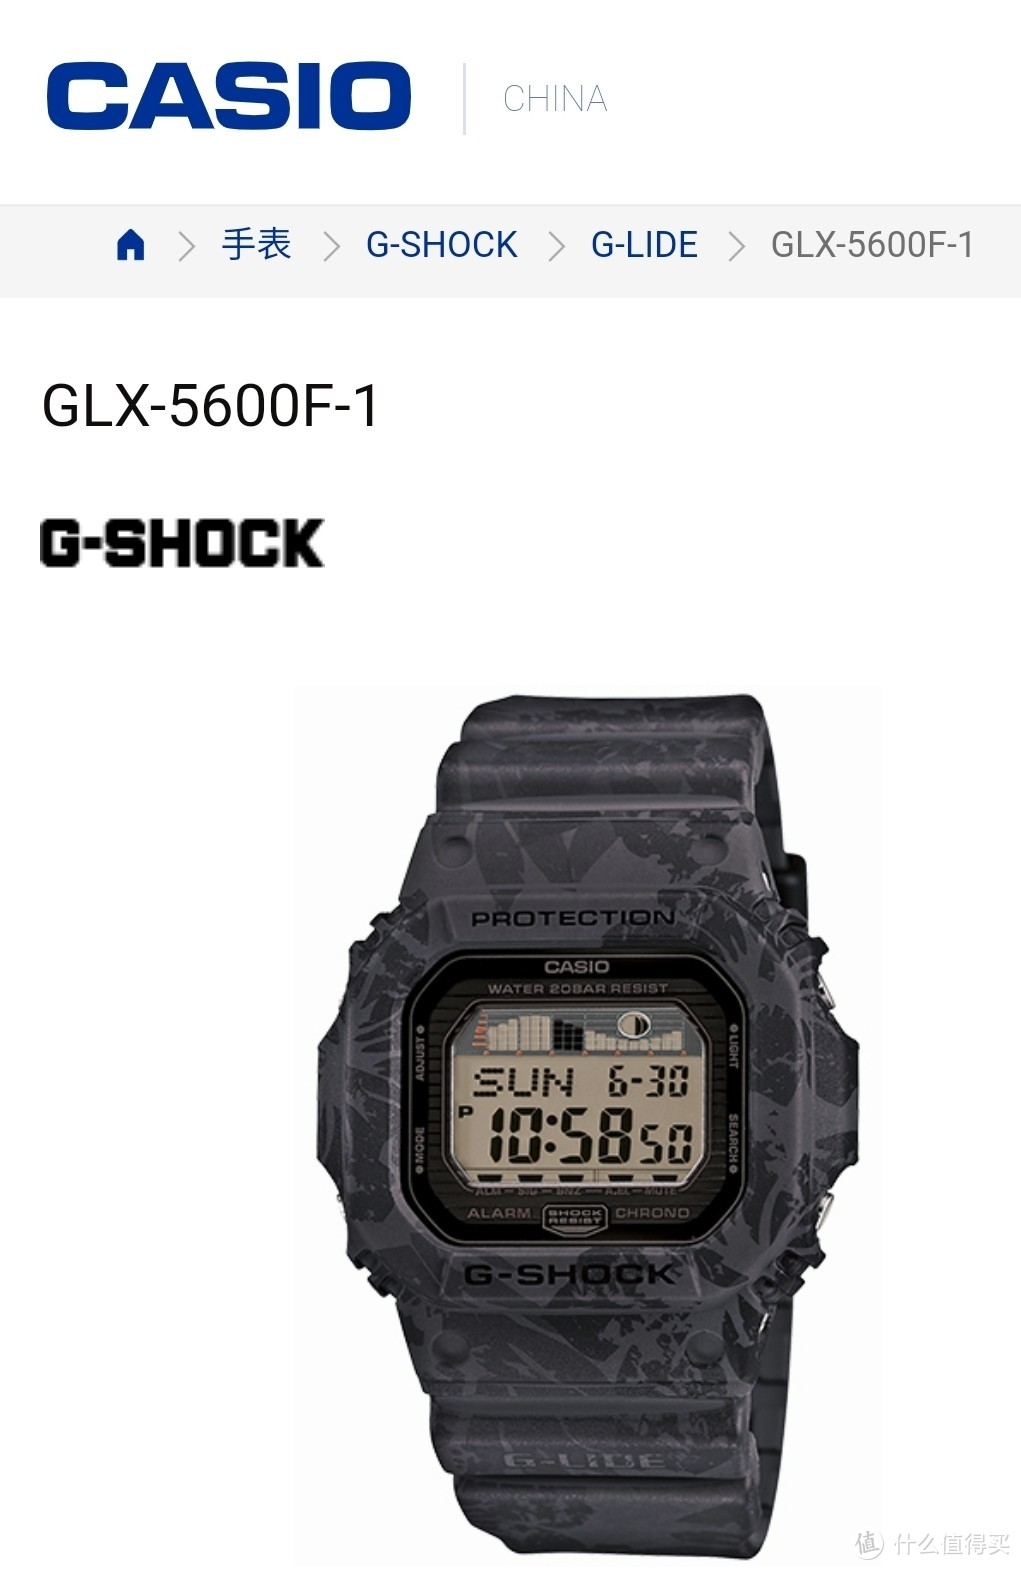 GLX-5600